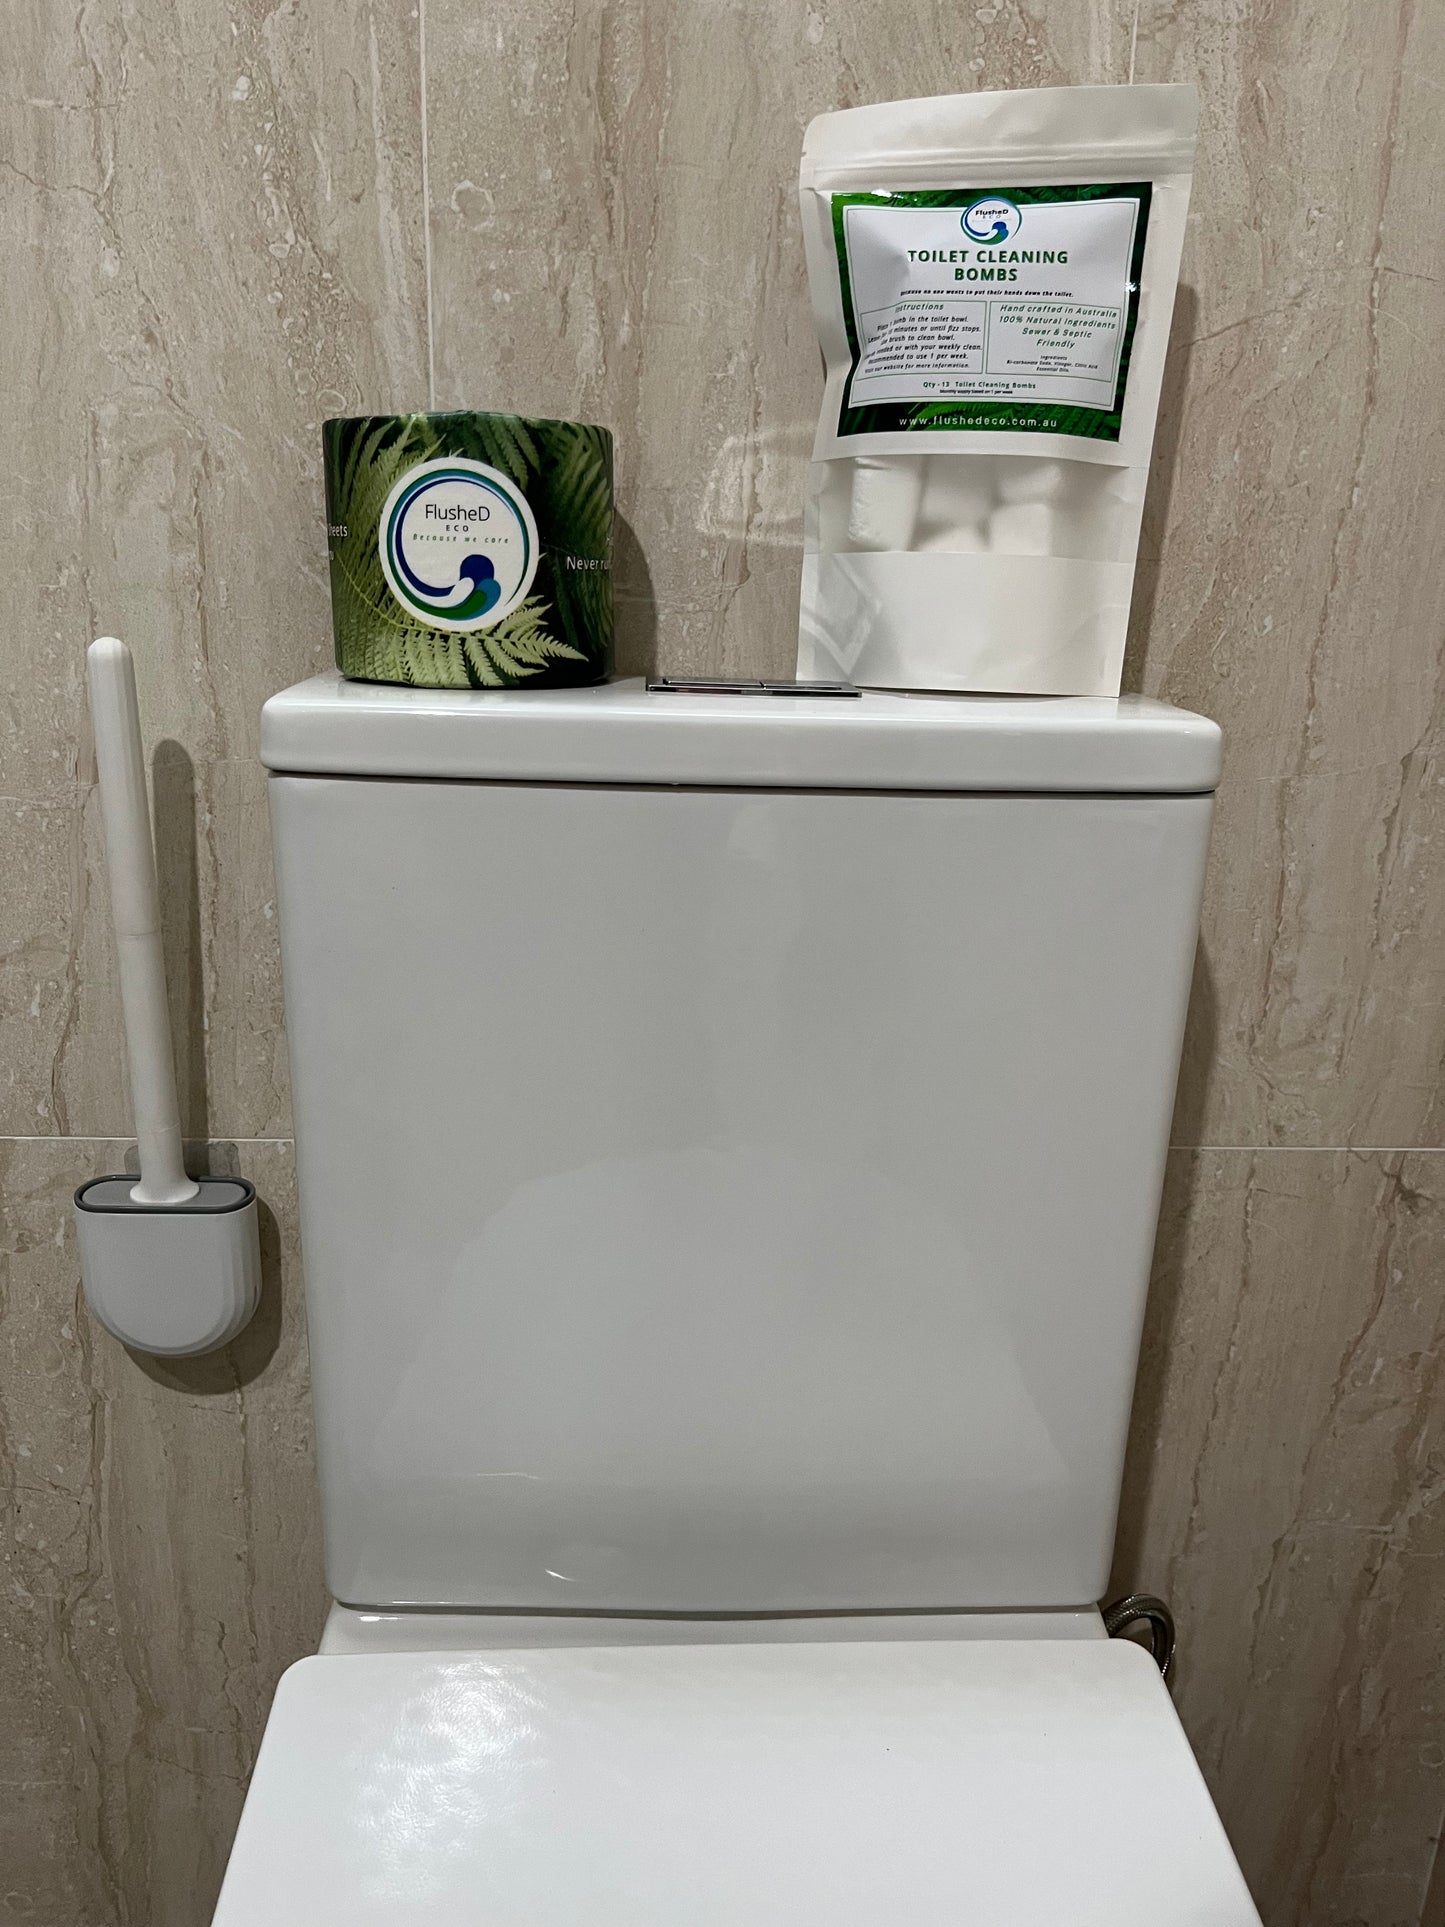 Toilet Cleaning Brush | FlusheD ECO